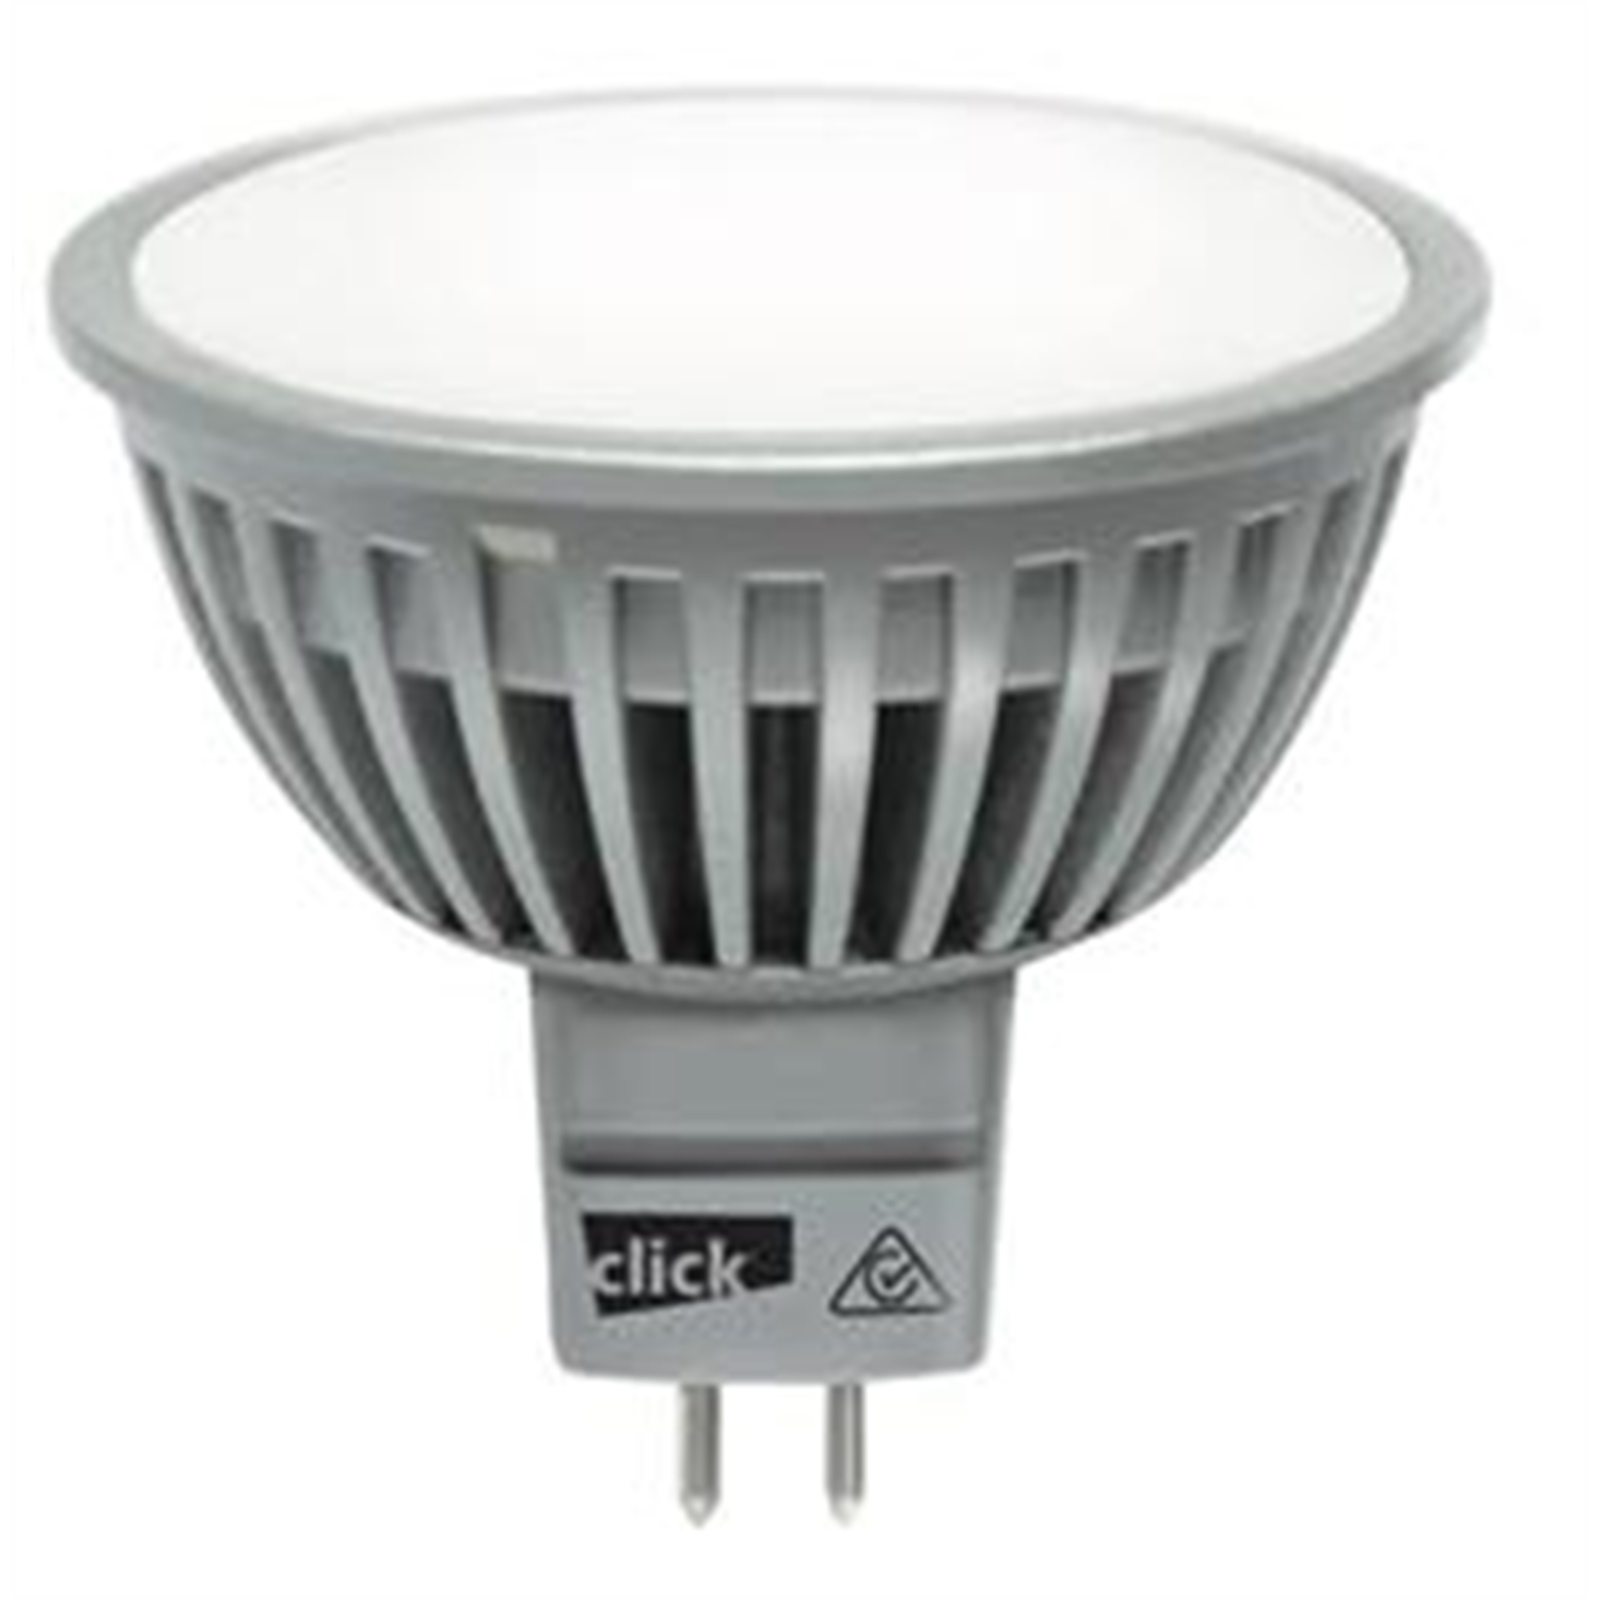 Click 5w GU5.3 LED Warm White Globes - 4 Pack